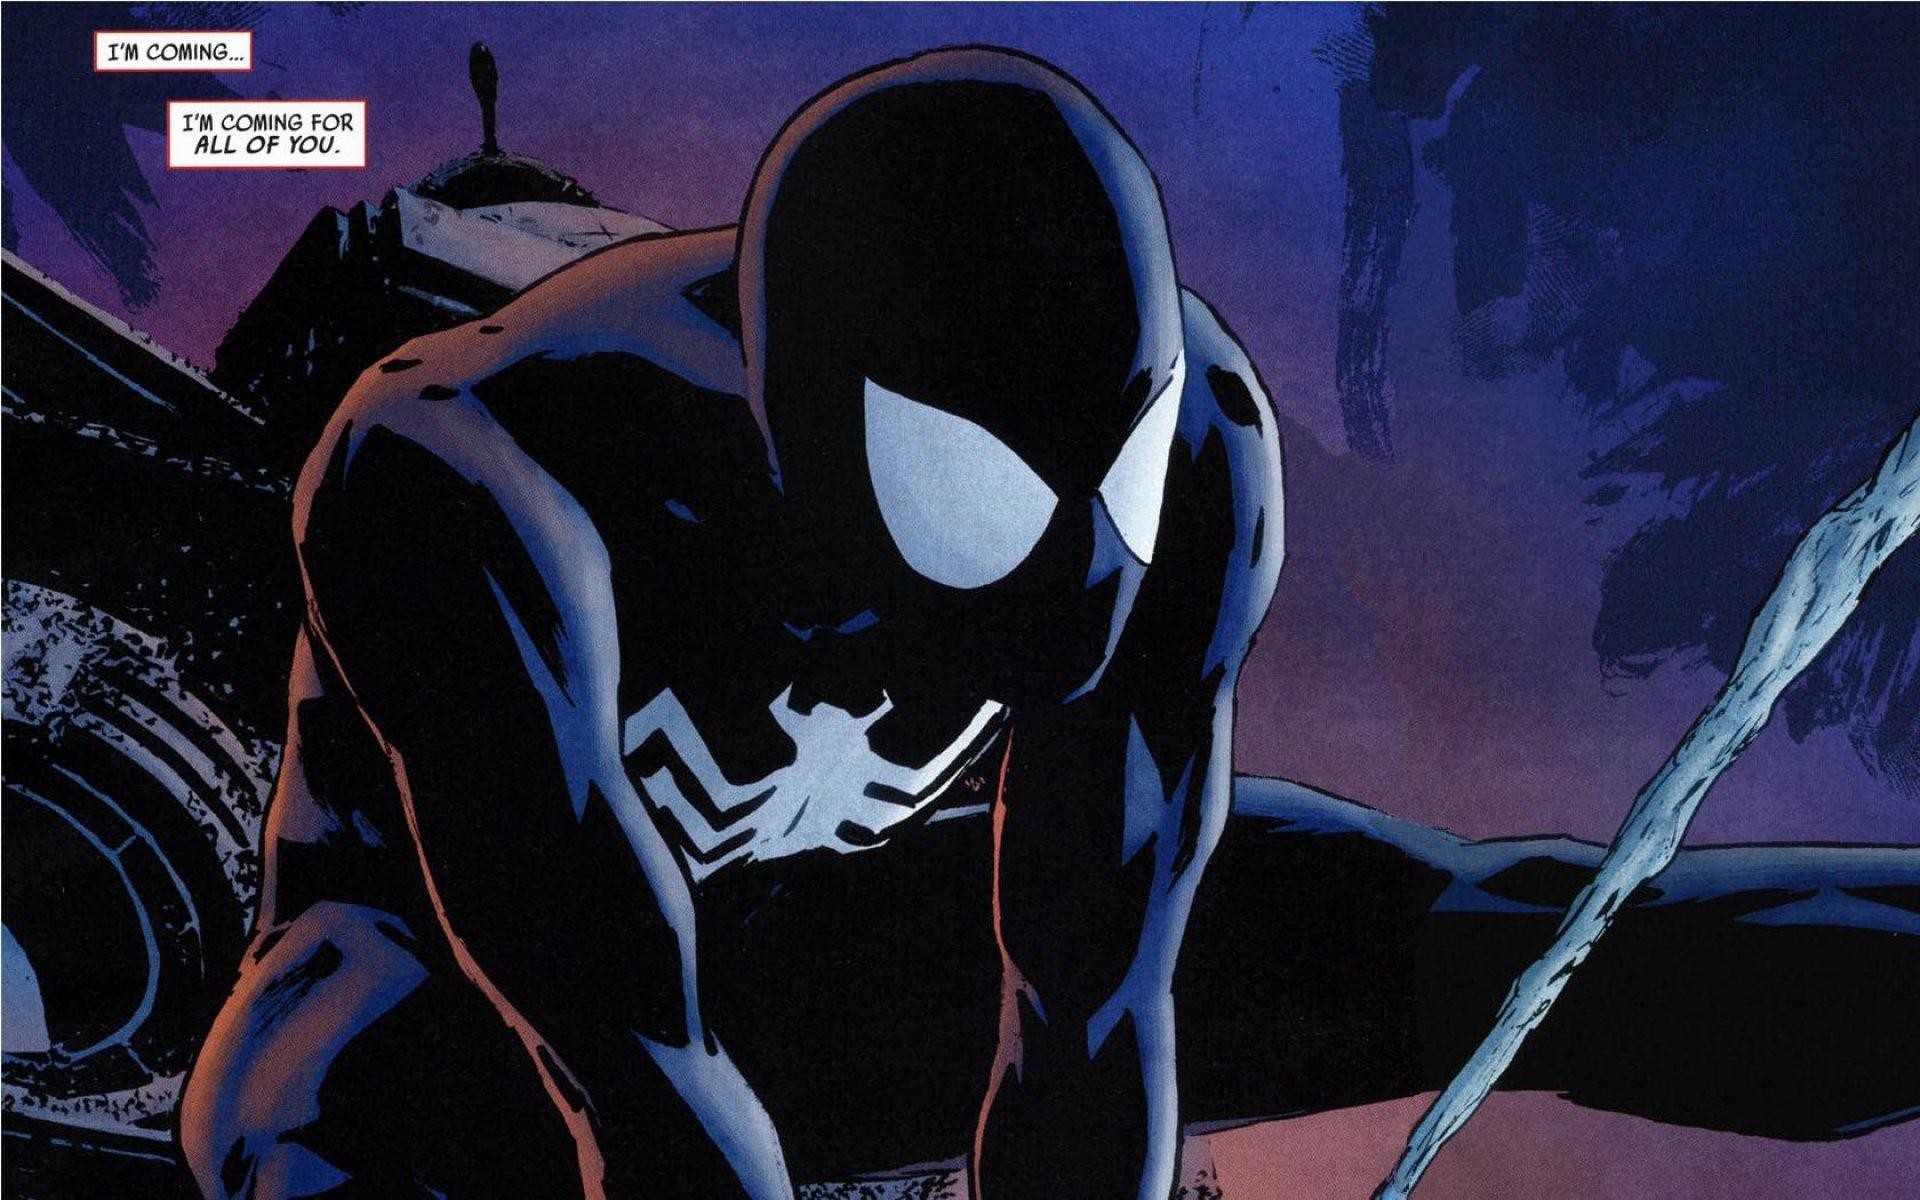 Spiderman black HD phone wallpaper  Peakpx